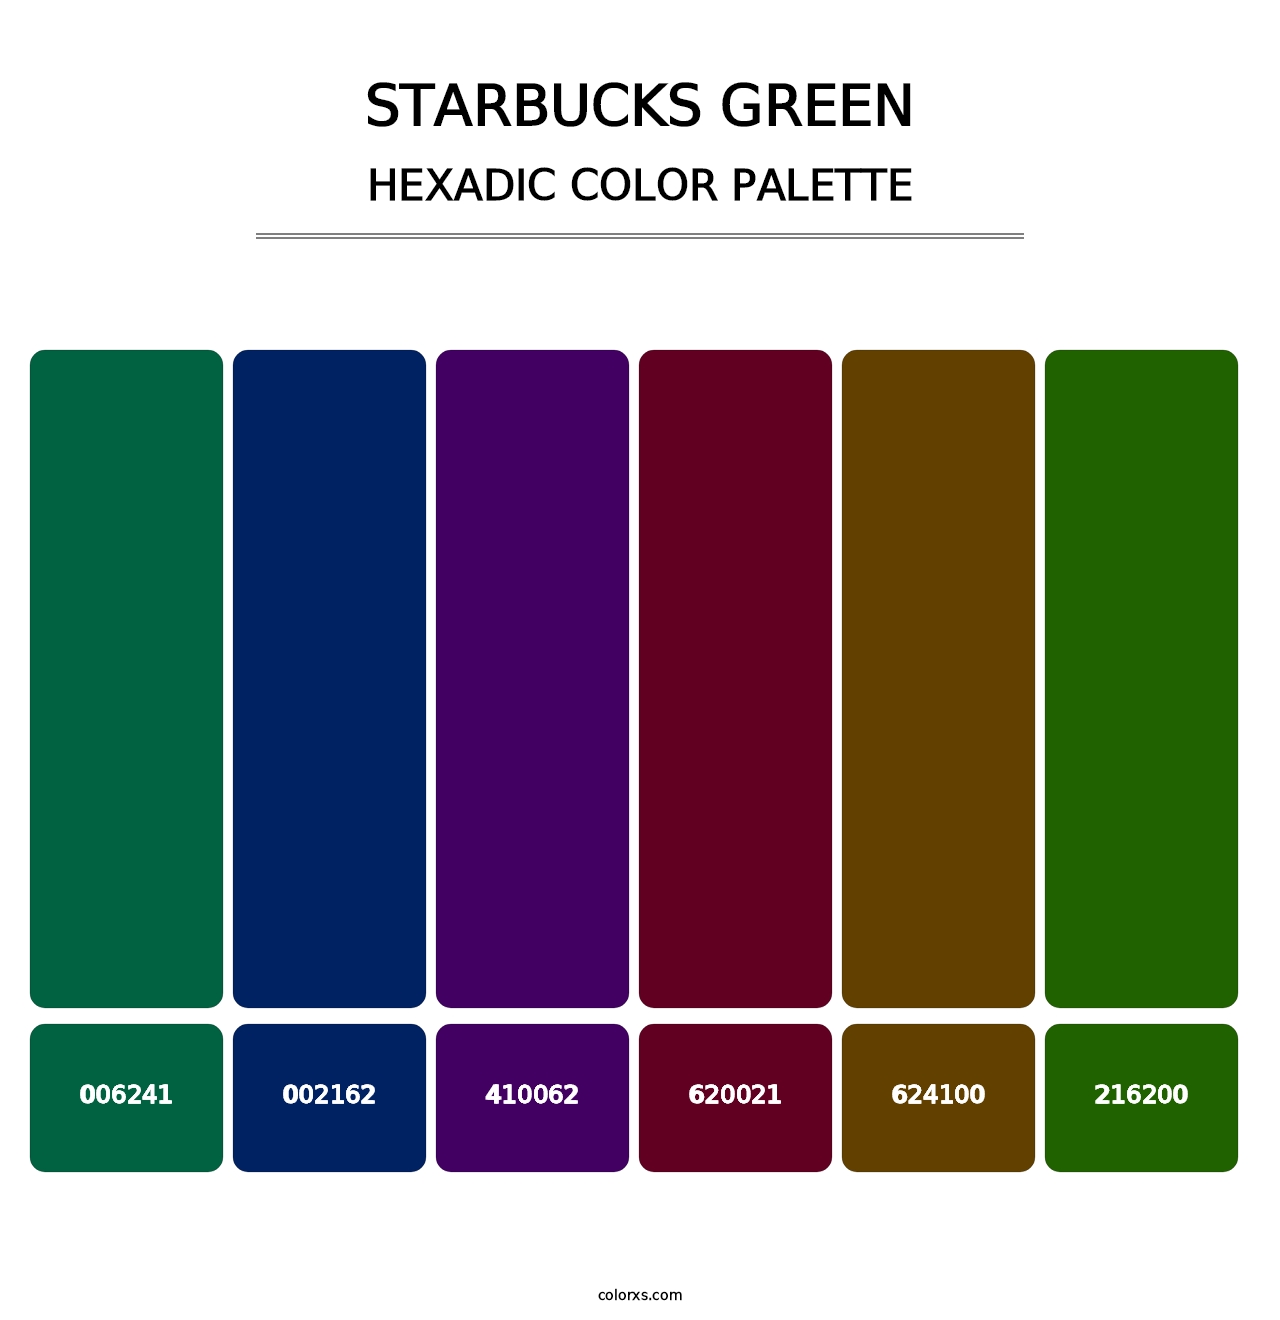 Starbucks Green - Hexadic Color Palette